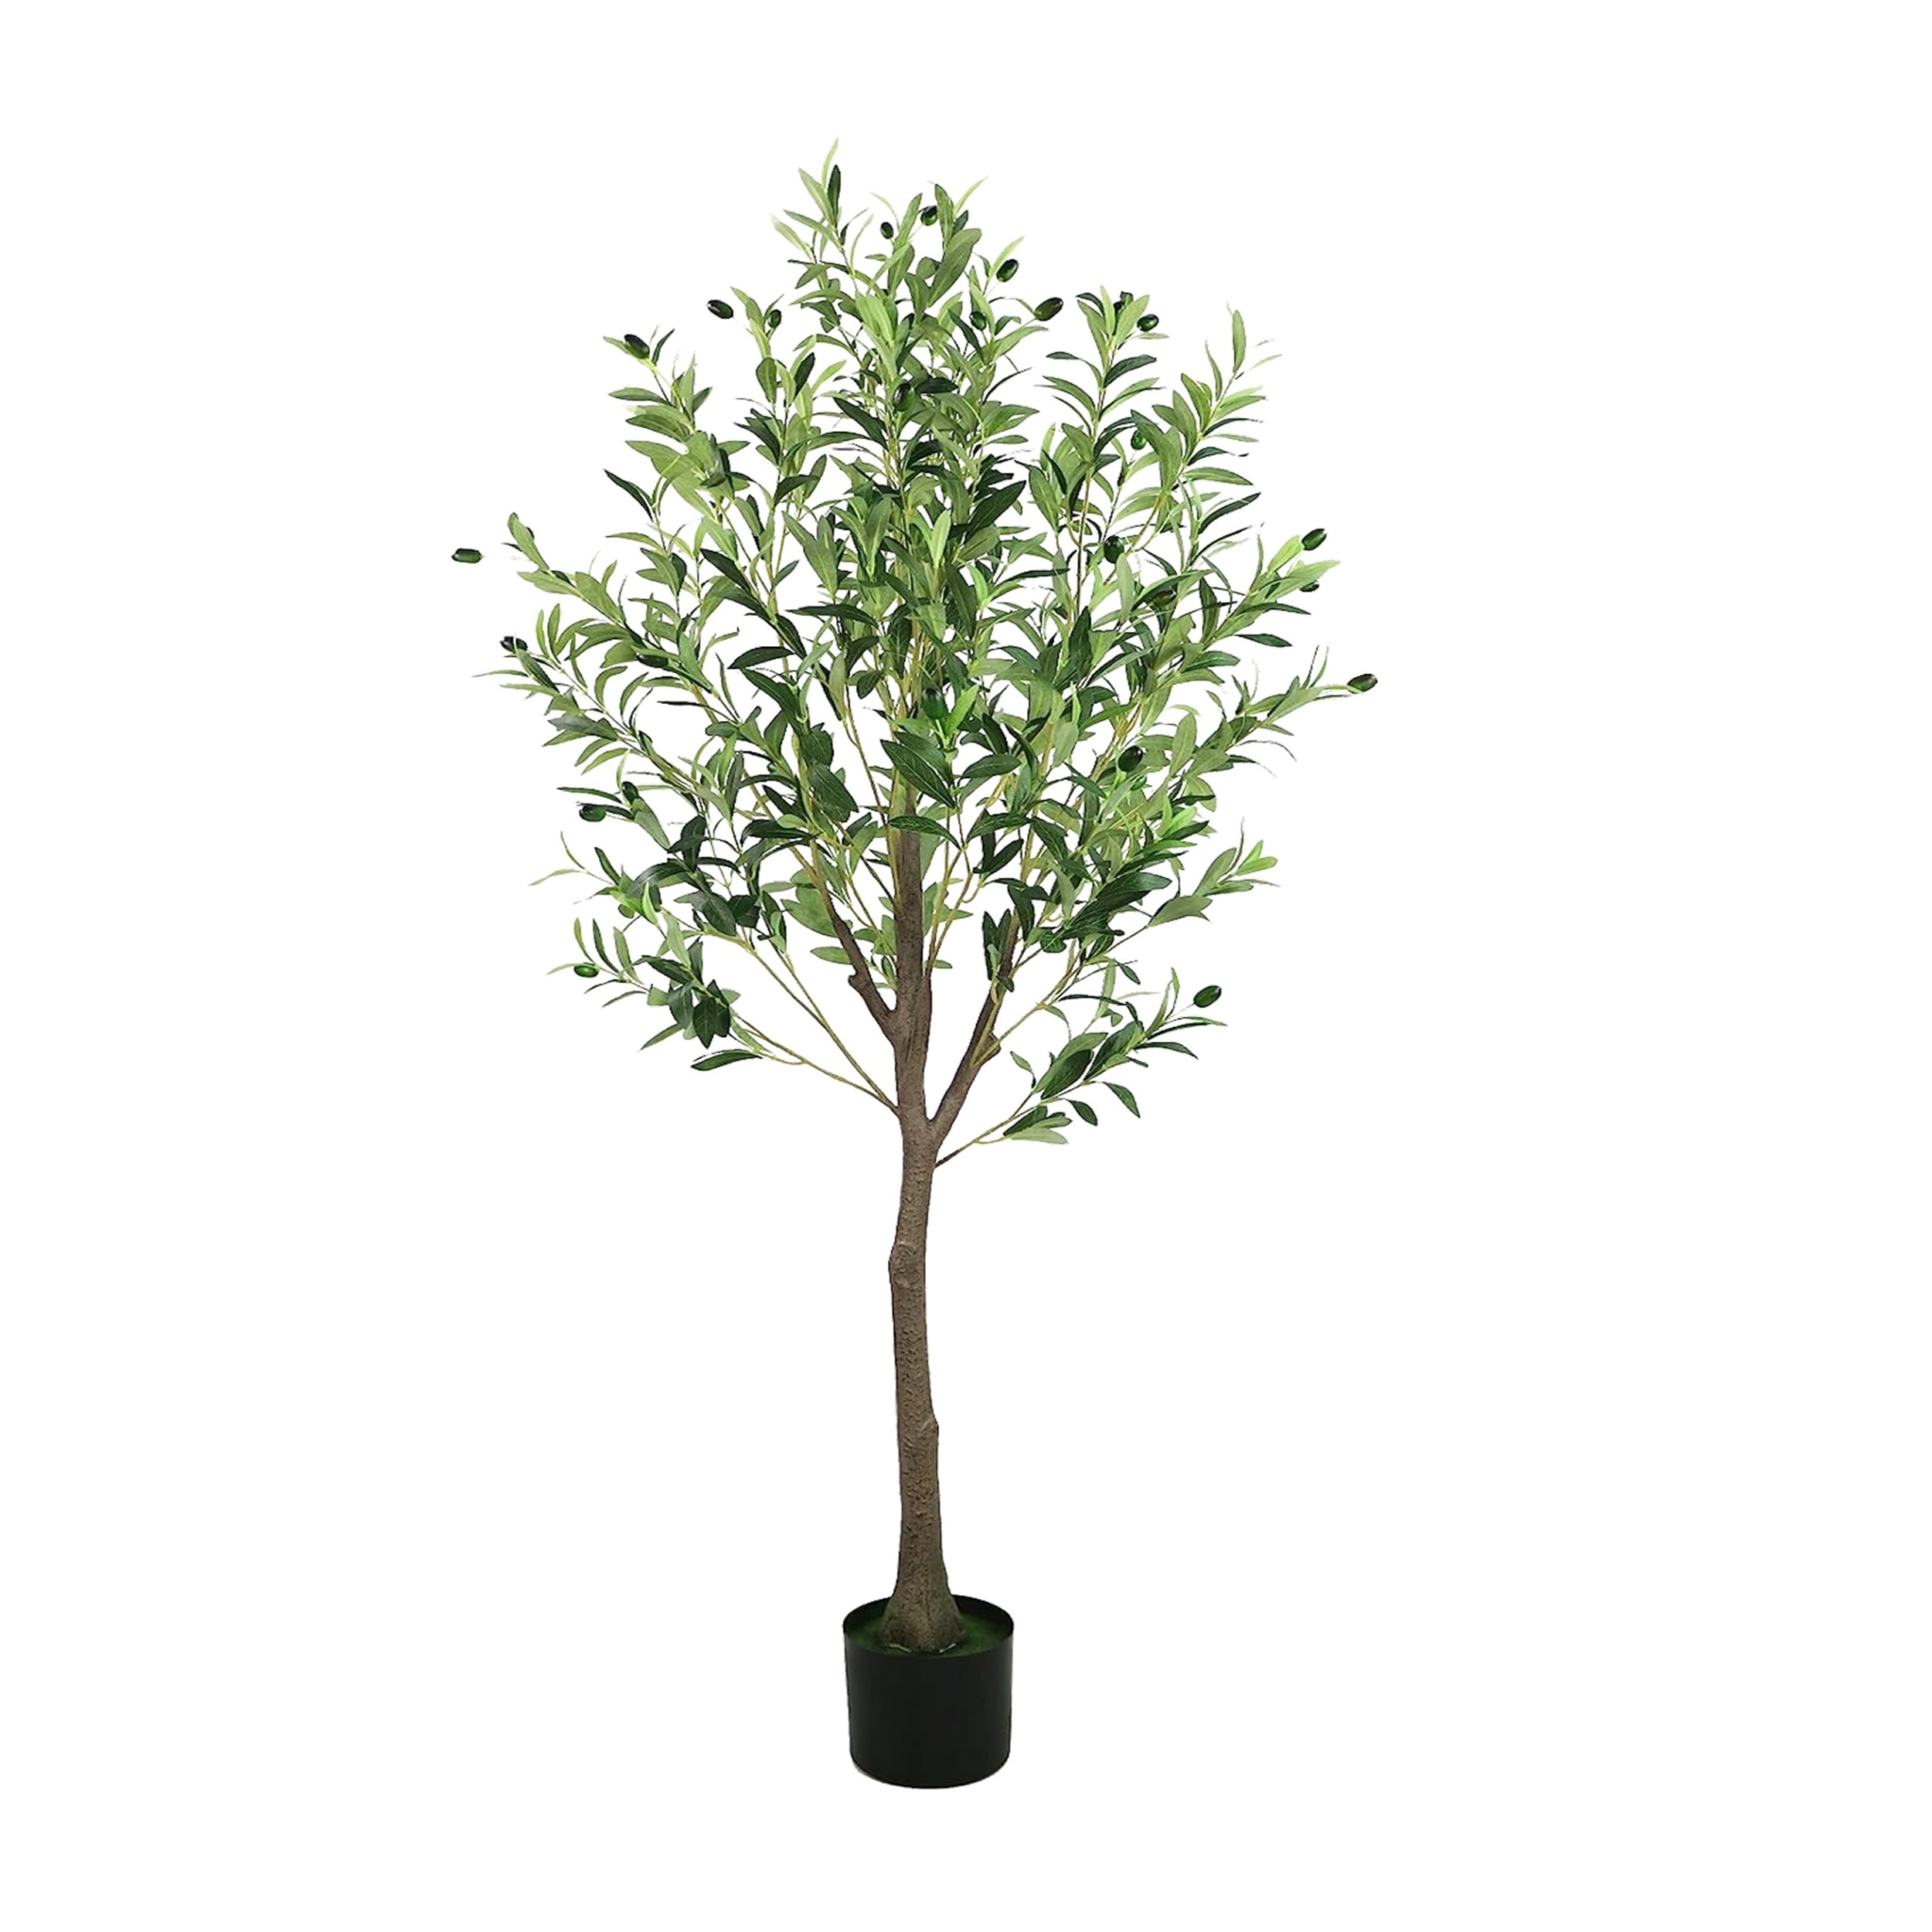 Crosofmi - Olivo artificial en maceta, 5 pies de alto, árbol de seda,  planta topiaria, moderna, perfecto para interiores, decoración, exterior,  casa